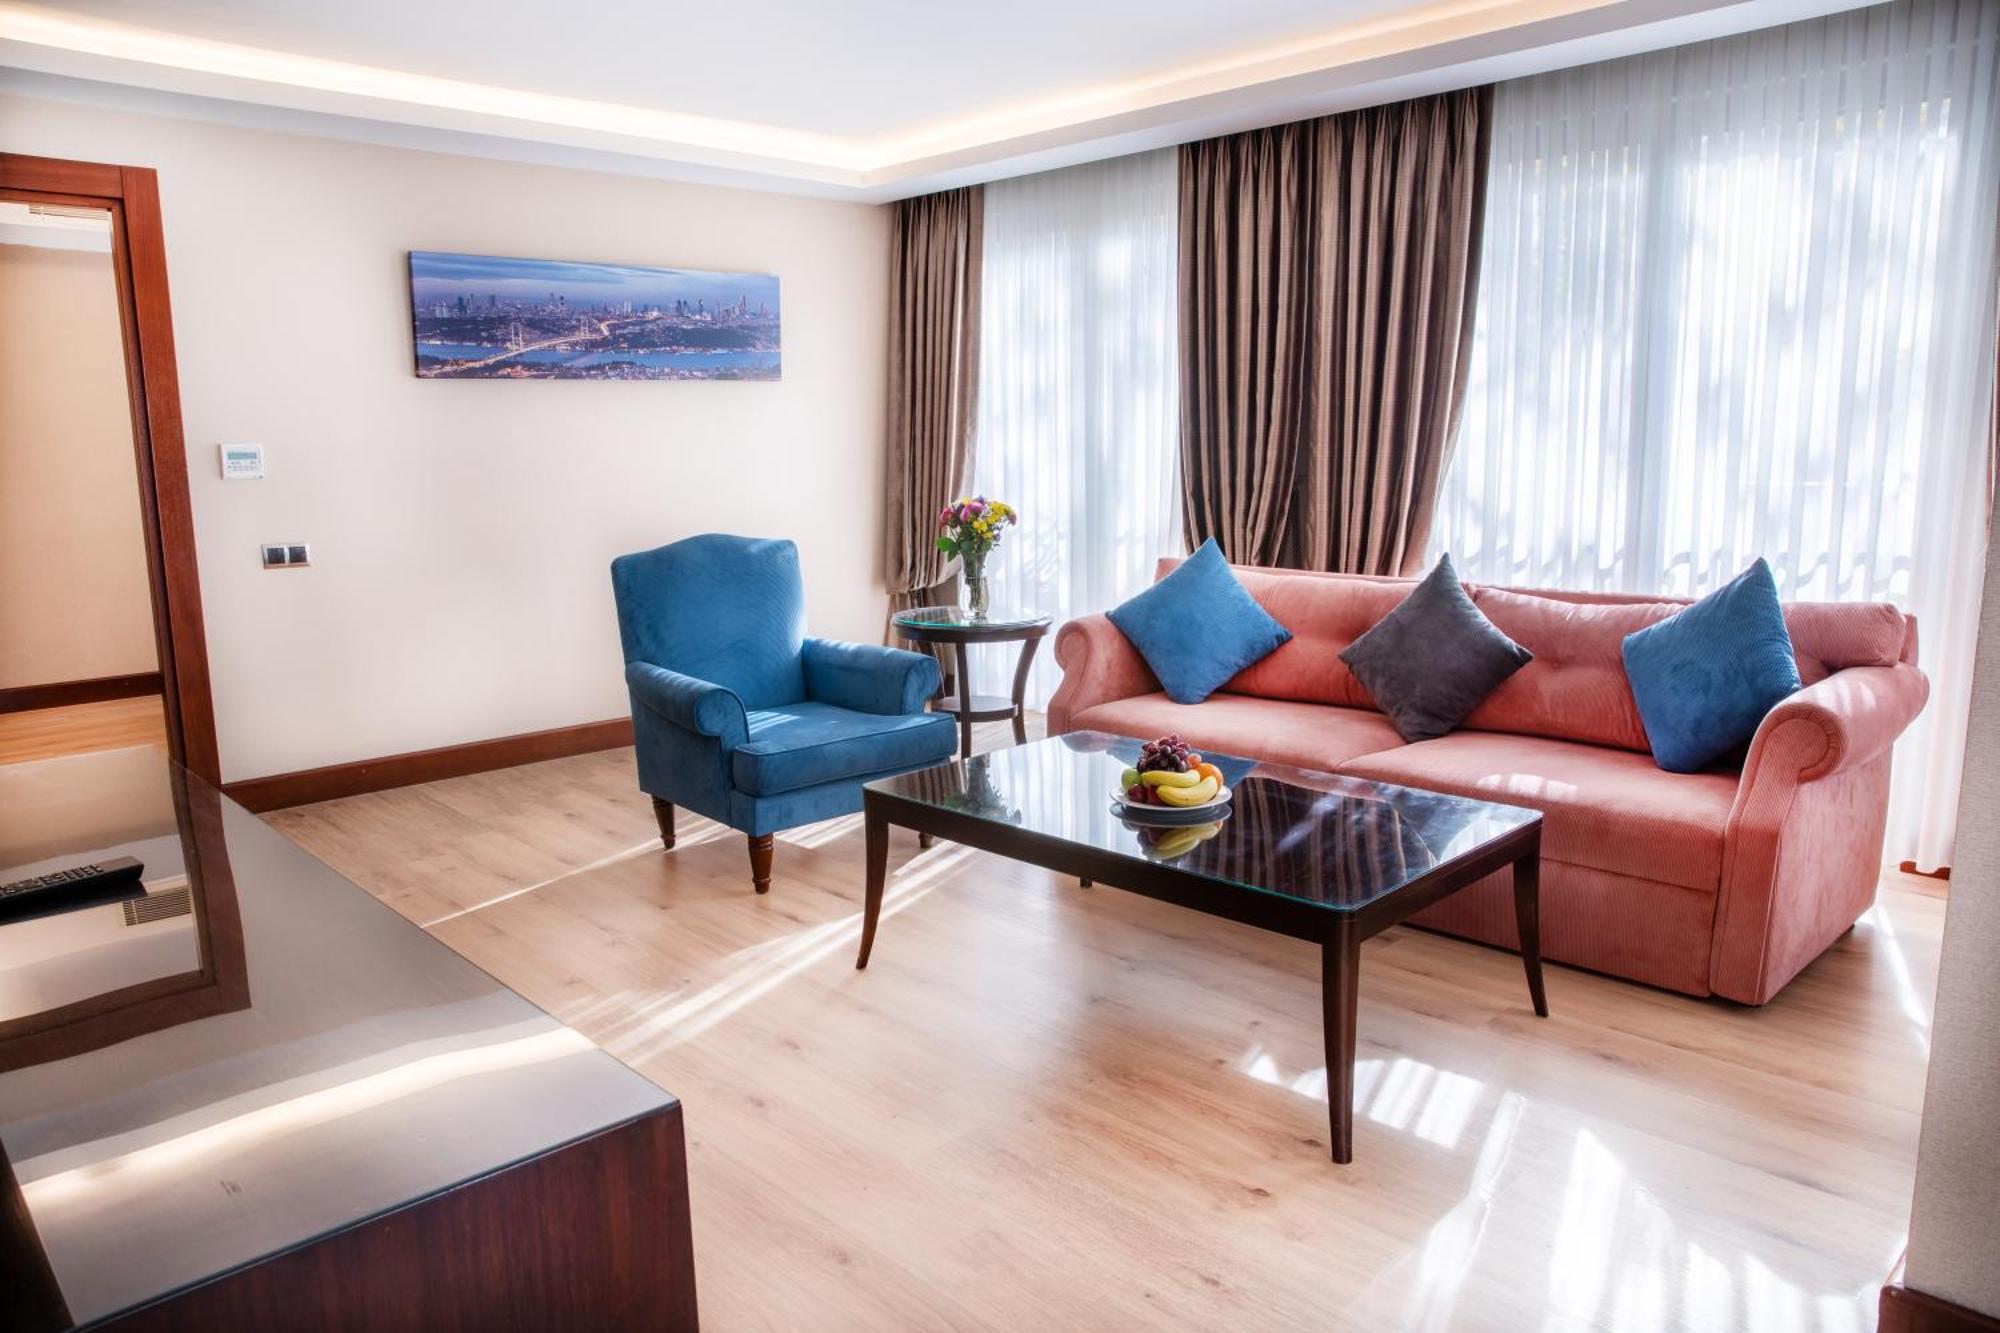 Grand Aras Hotel & Suites Istambul Exterior foto